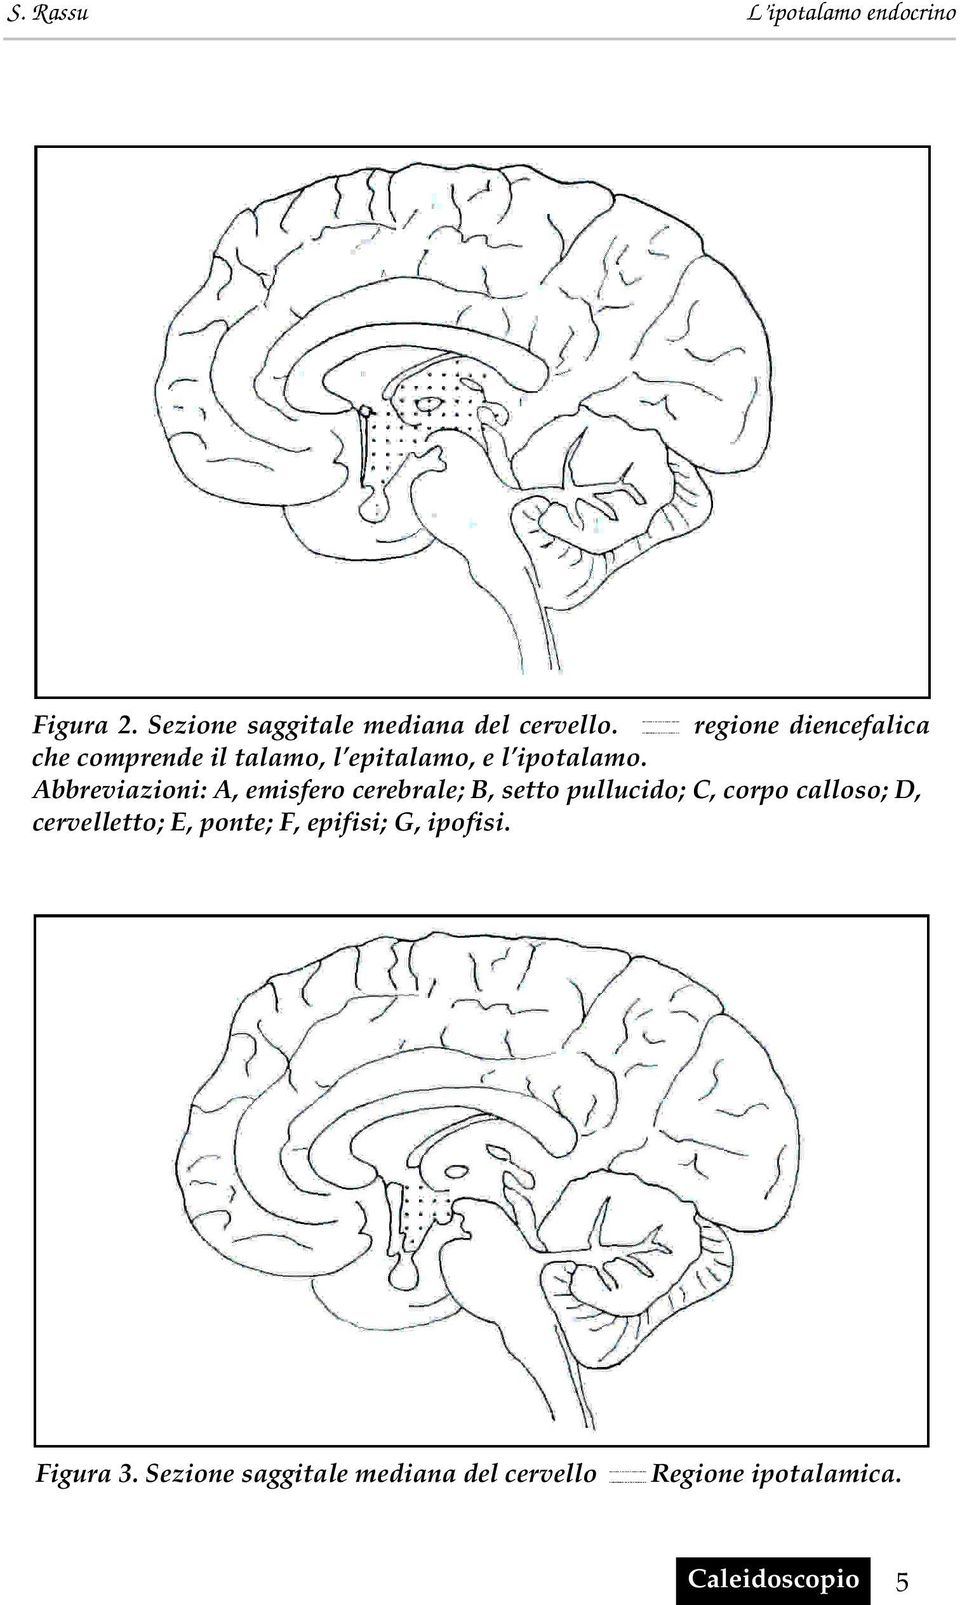 Abbreviazioni: A, emisfero cerebrale; B, setto pullucido; C, corpo calloso; D,